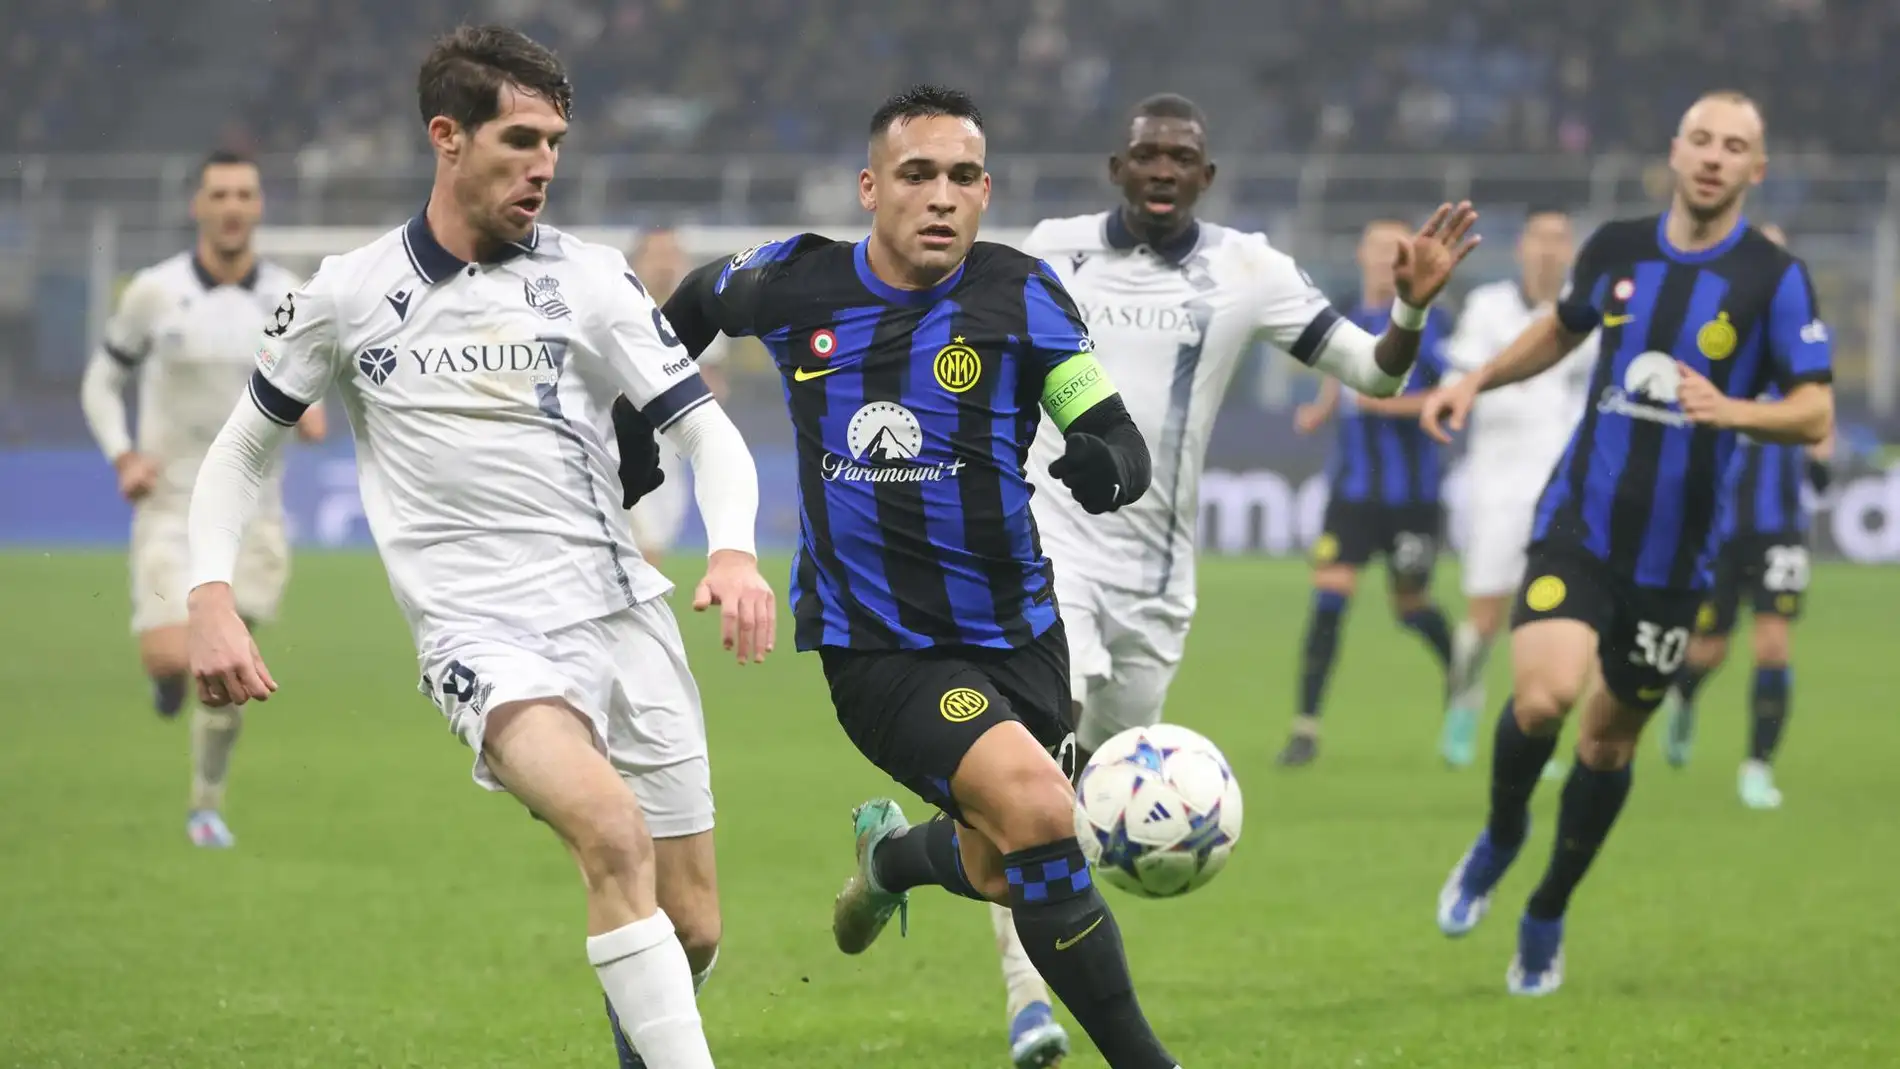 Elustondo y Lautaro se disputan el balón en el Inter - Real Sociedad.